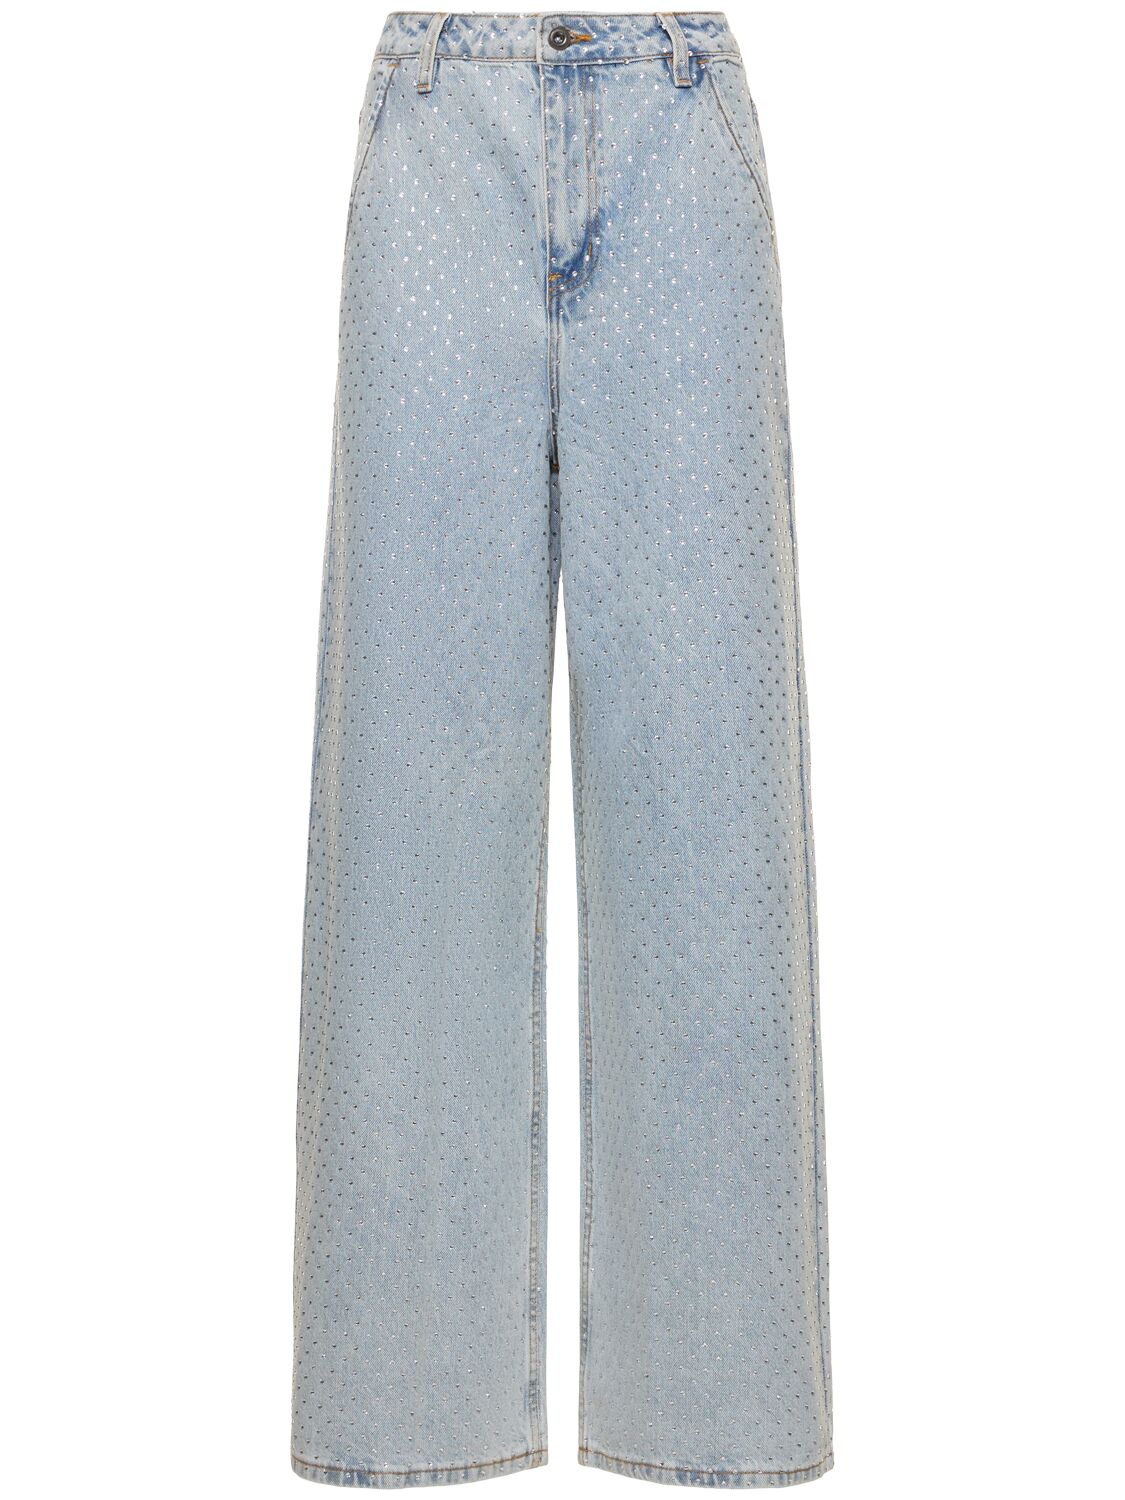 Image of Embellished Cotton Denim Wide Jeans